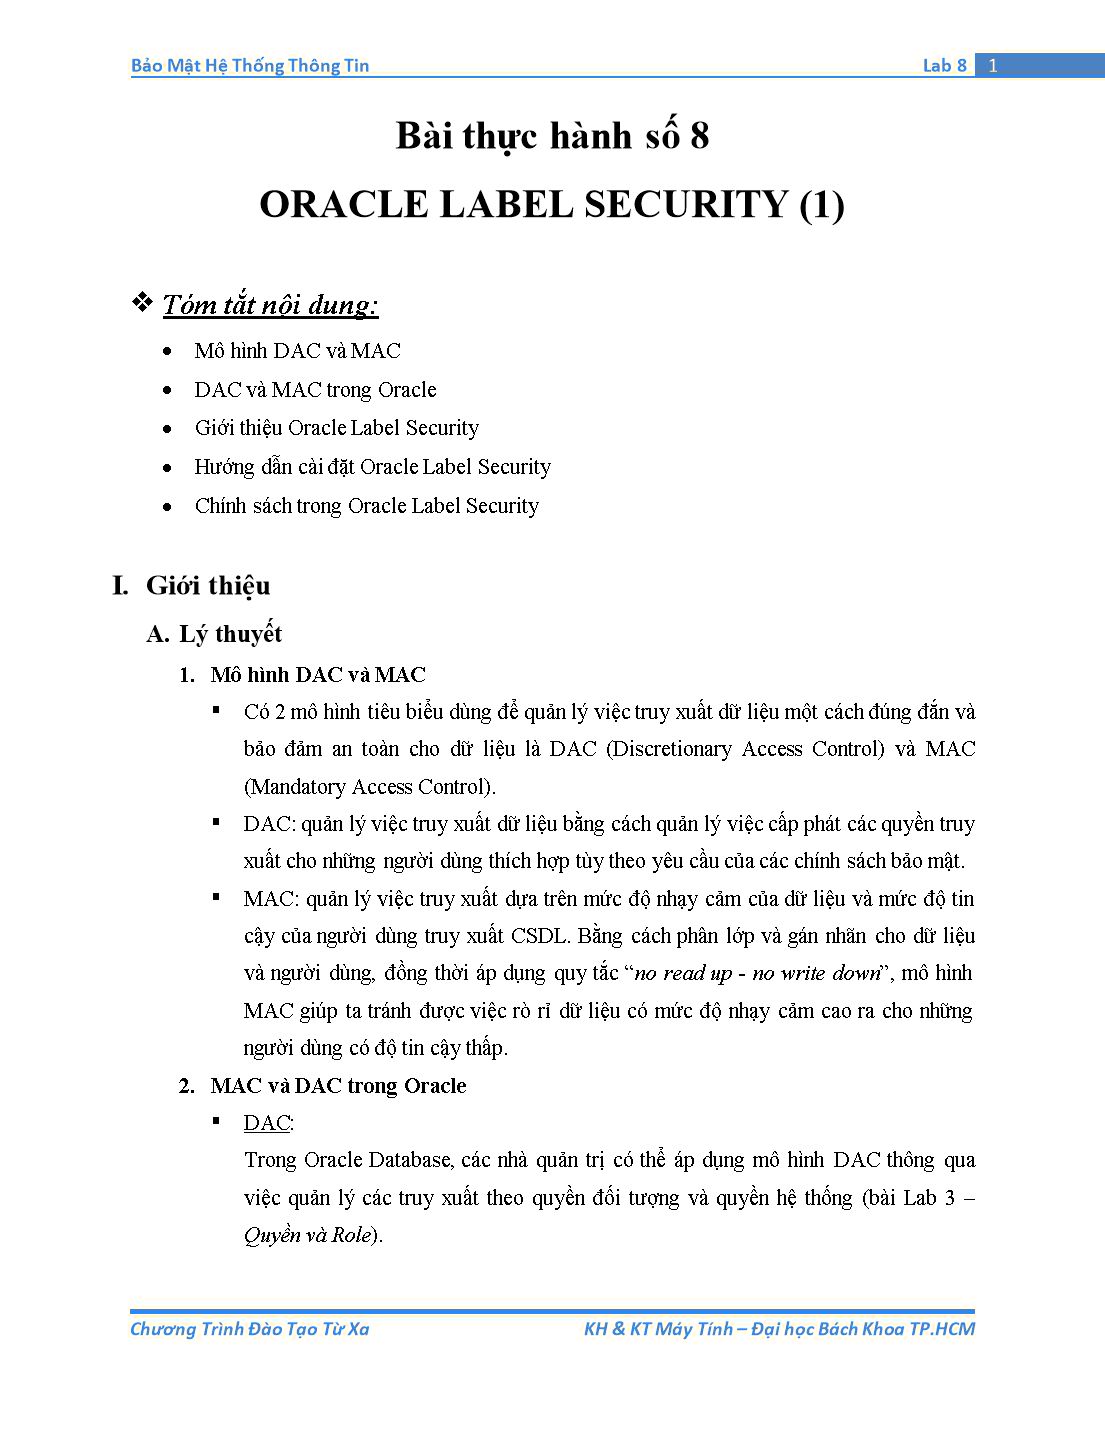 Tài liệu thực hành Bảo mật hệ thống thông tin - Bài thực hành số 8: Oracle Label Security (Phần 1) trang 1